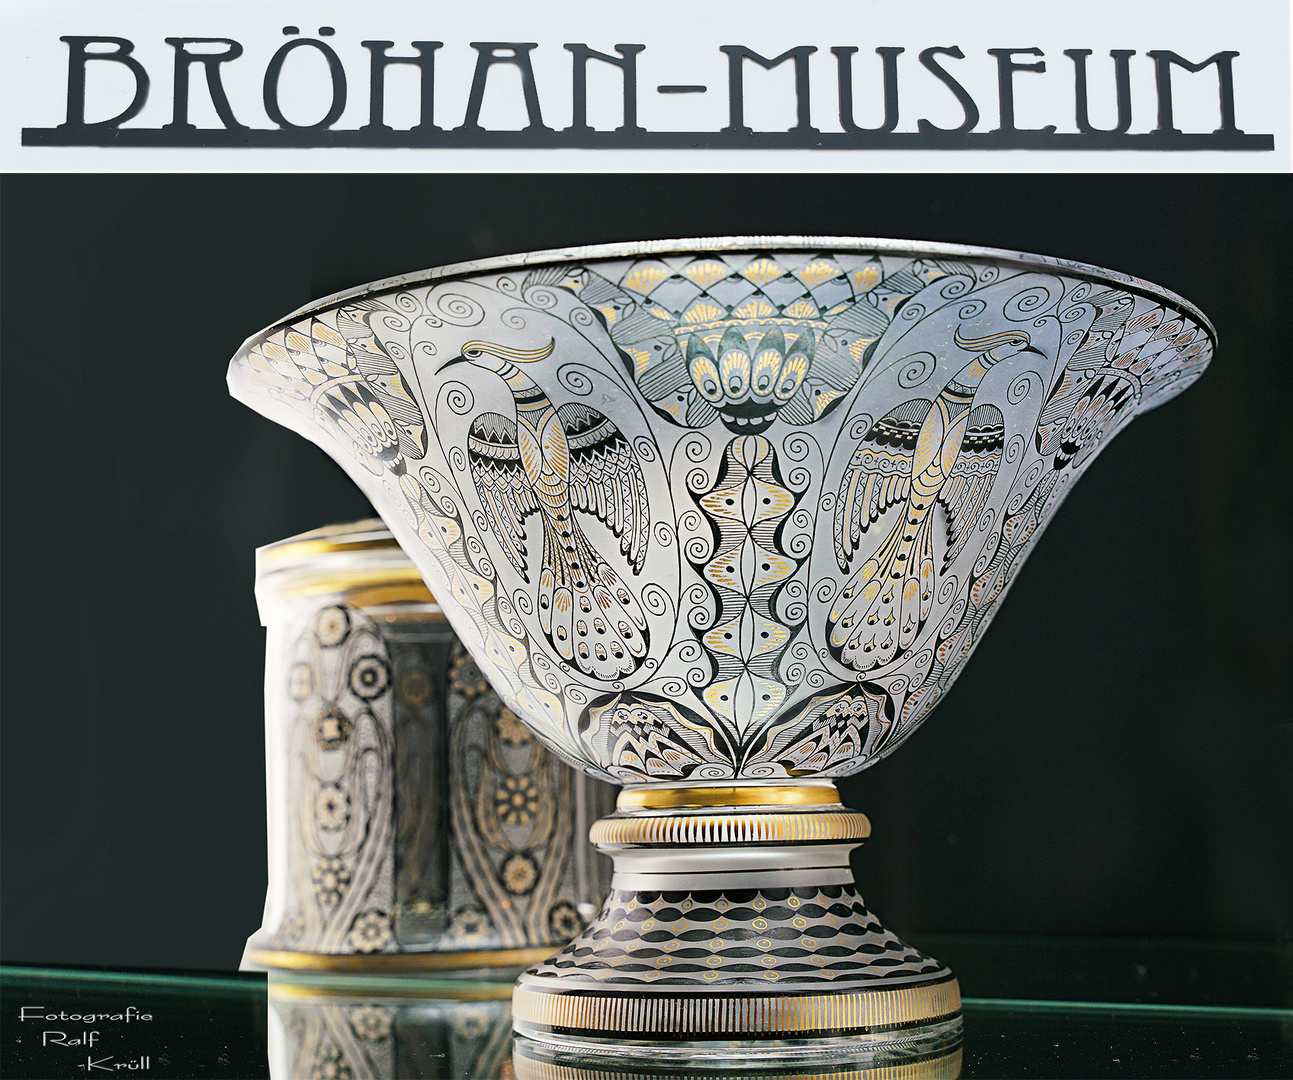 Diese Vase wird im Museum als Fußschale bezeichnet und ist über 100 Jahre alt